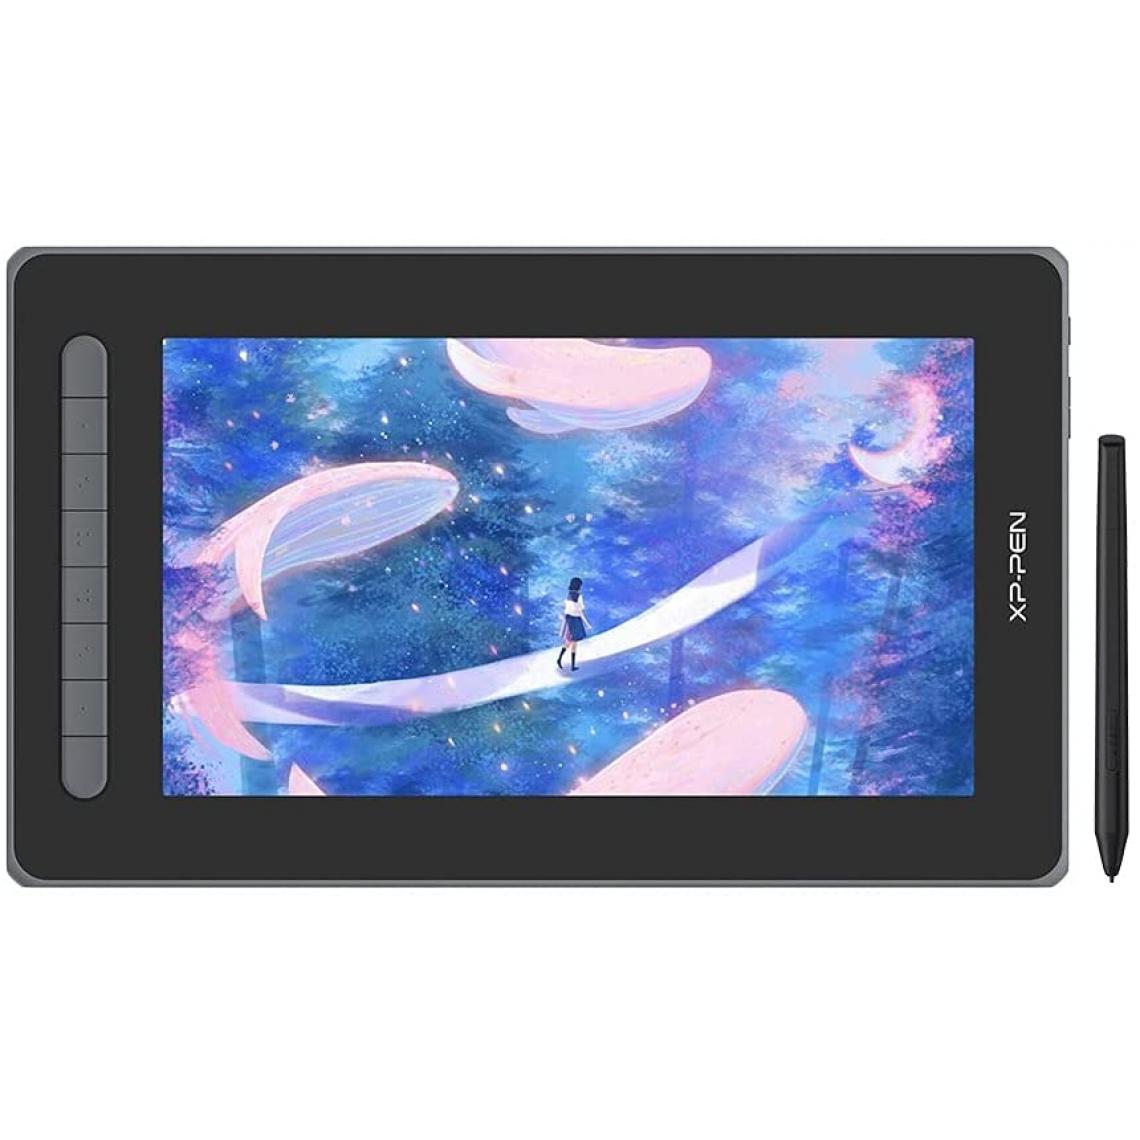 Xp-Pen - XP-PEN Tablette Graphique Artist 12 2nd Generation 127% sRGB Stylet X3 avec Deux Ports Flexibles Compatible avec Android Chrombook Linux - Noir - Tablette Graphique